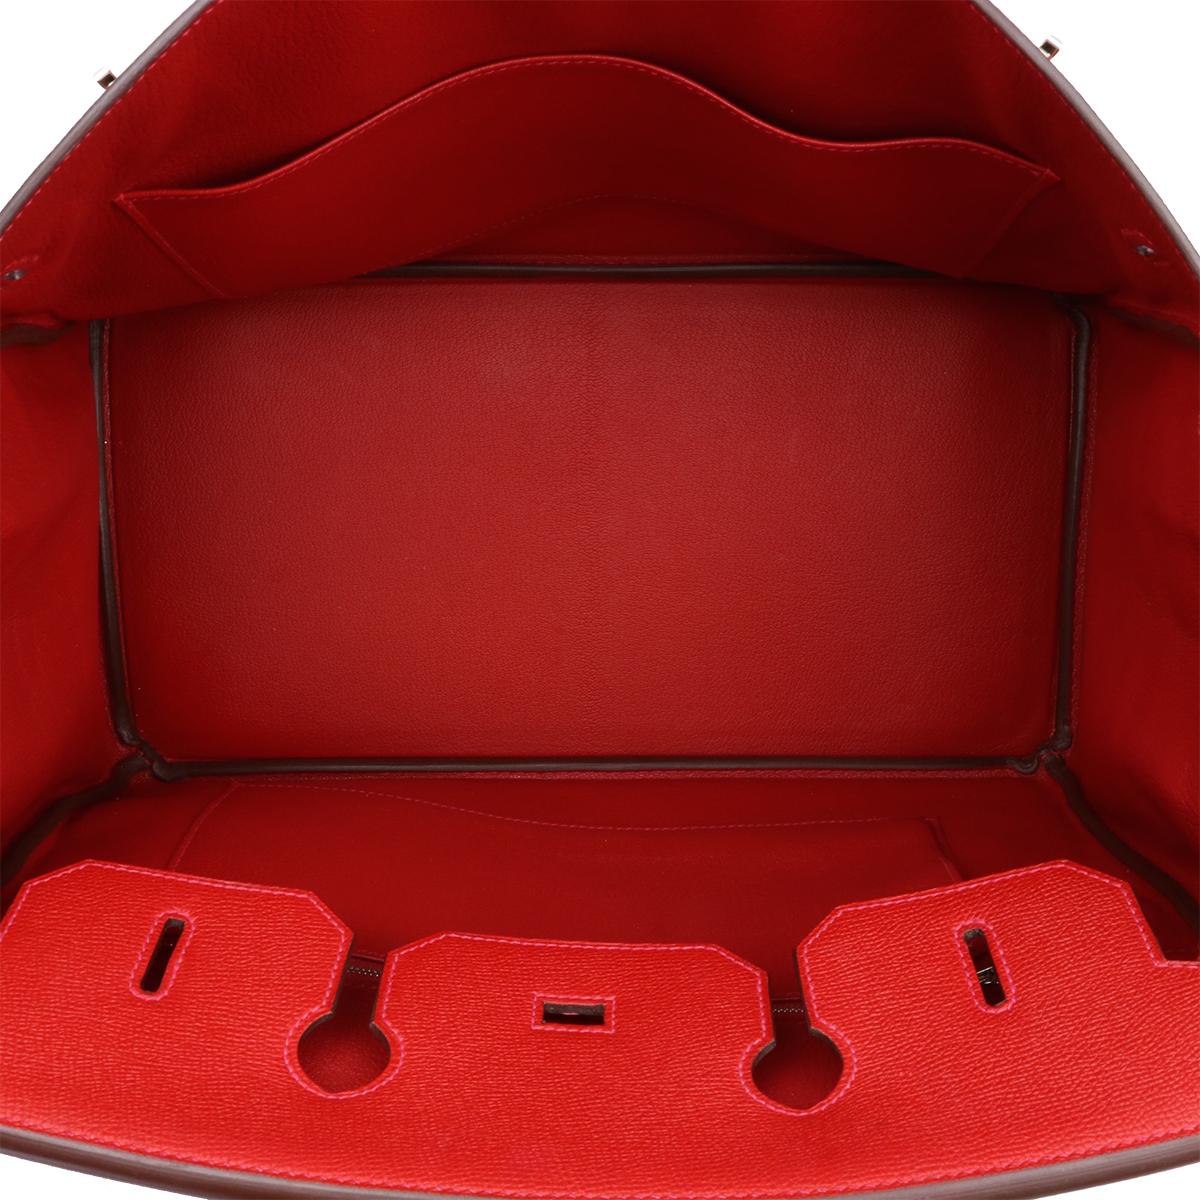 Hermès Birkin 35cm Q5 Rouge Casaque Epsom Leather with Palladium Hardware 2015 12